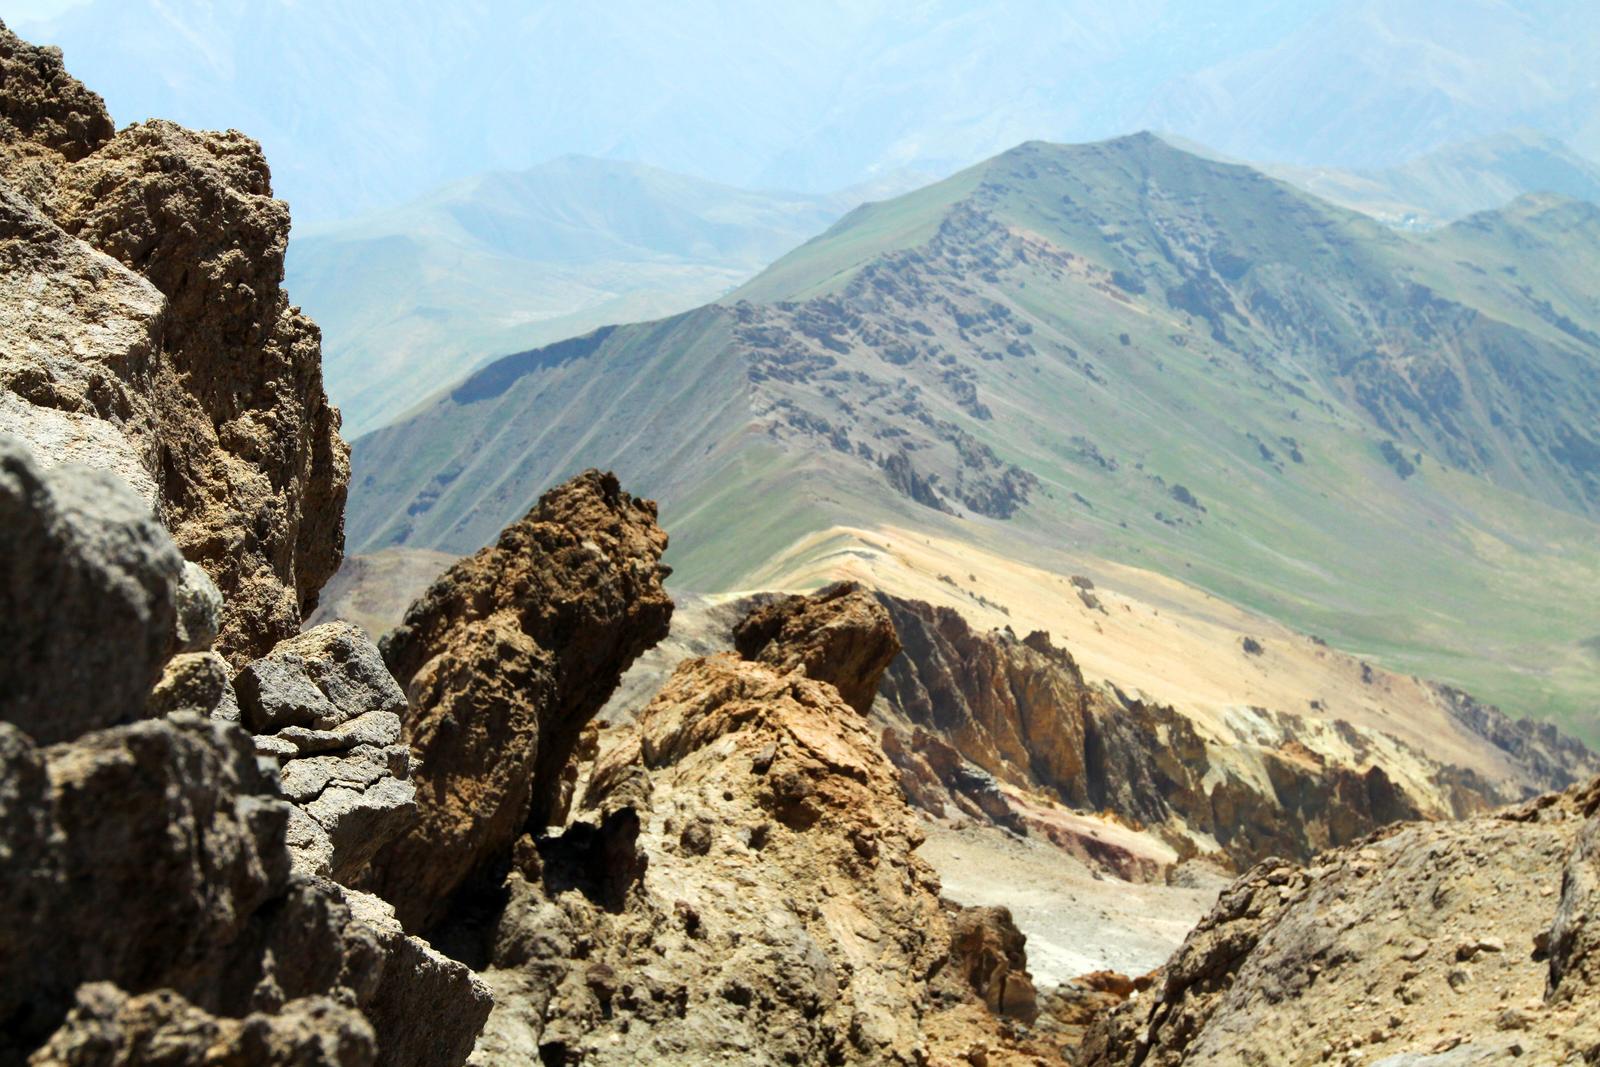 مسیر شمال شرقی بالای تخت فریدون, Northeast Route Above of Takhte Fereydun